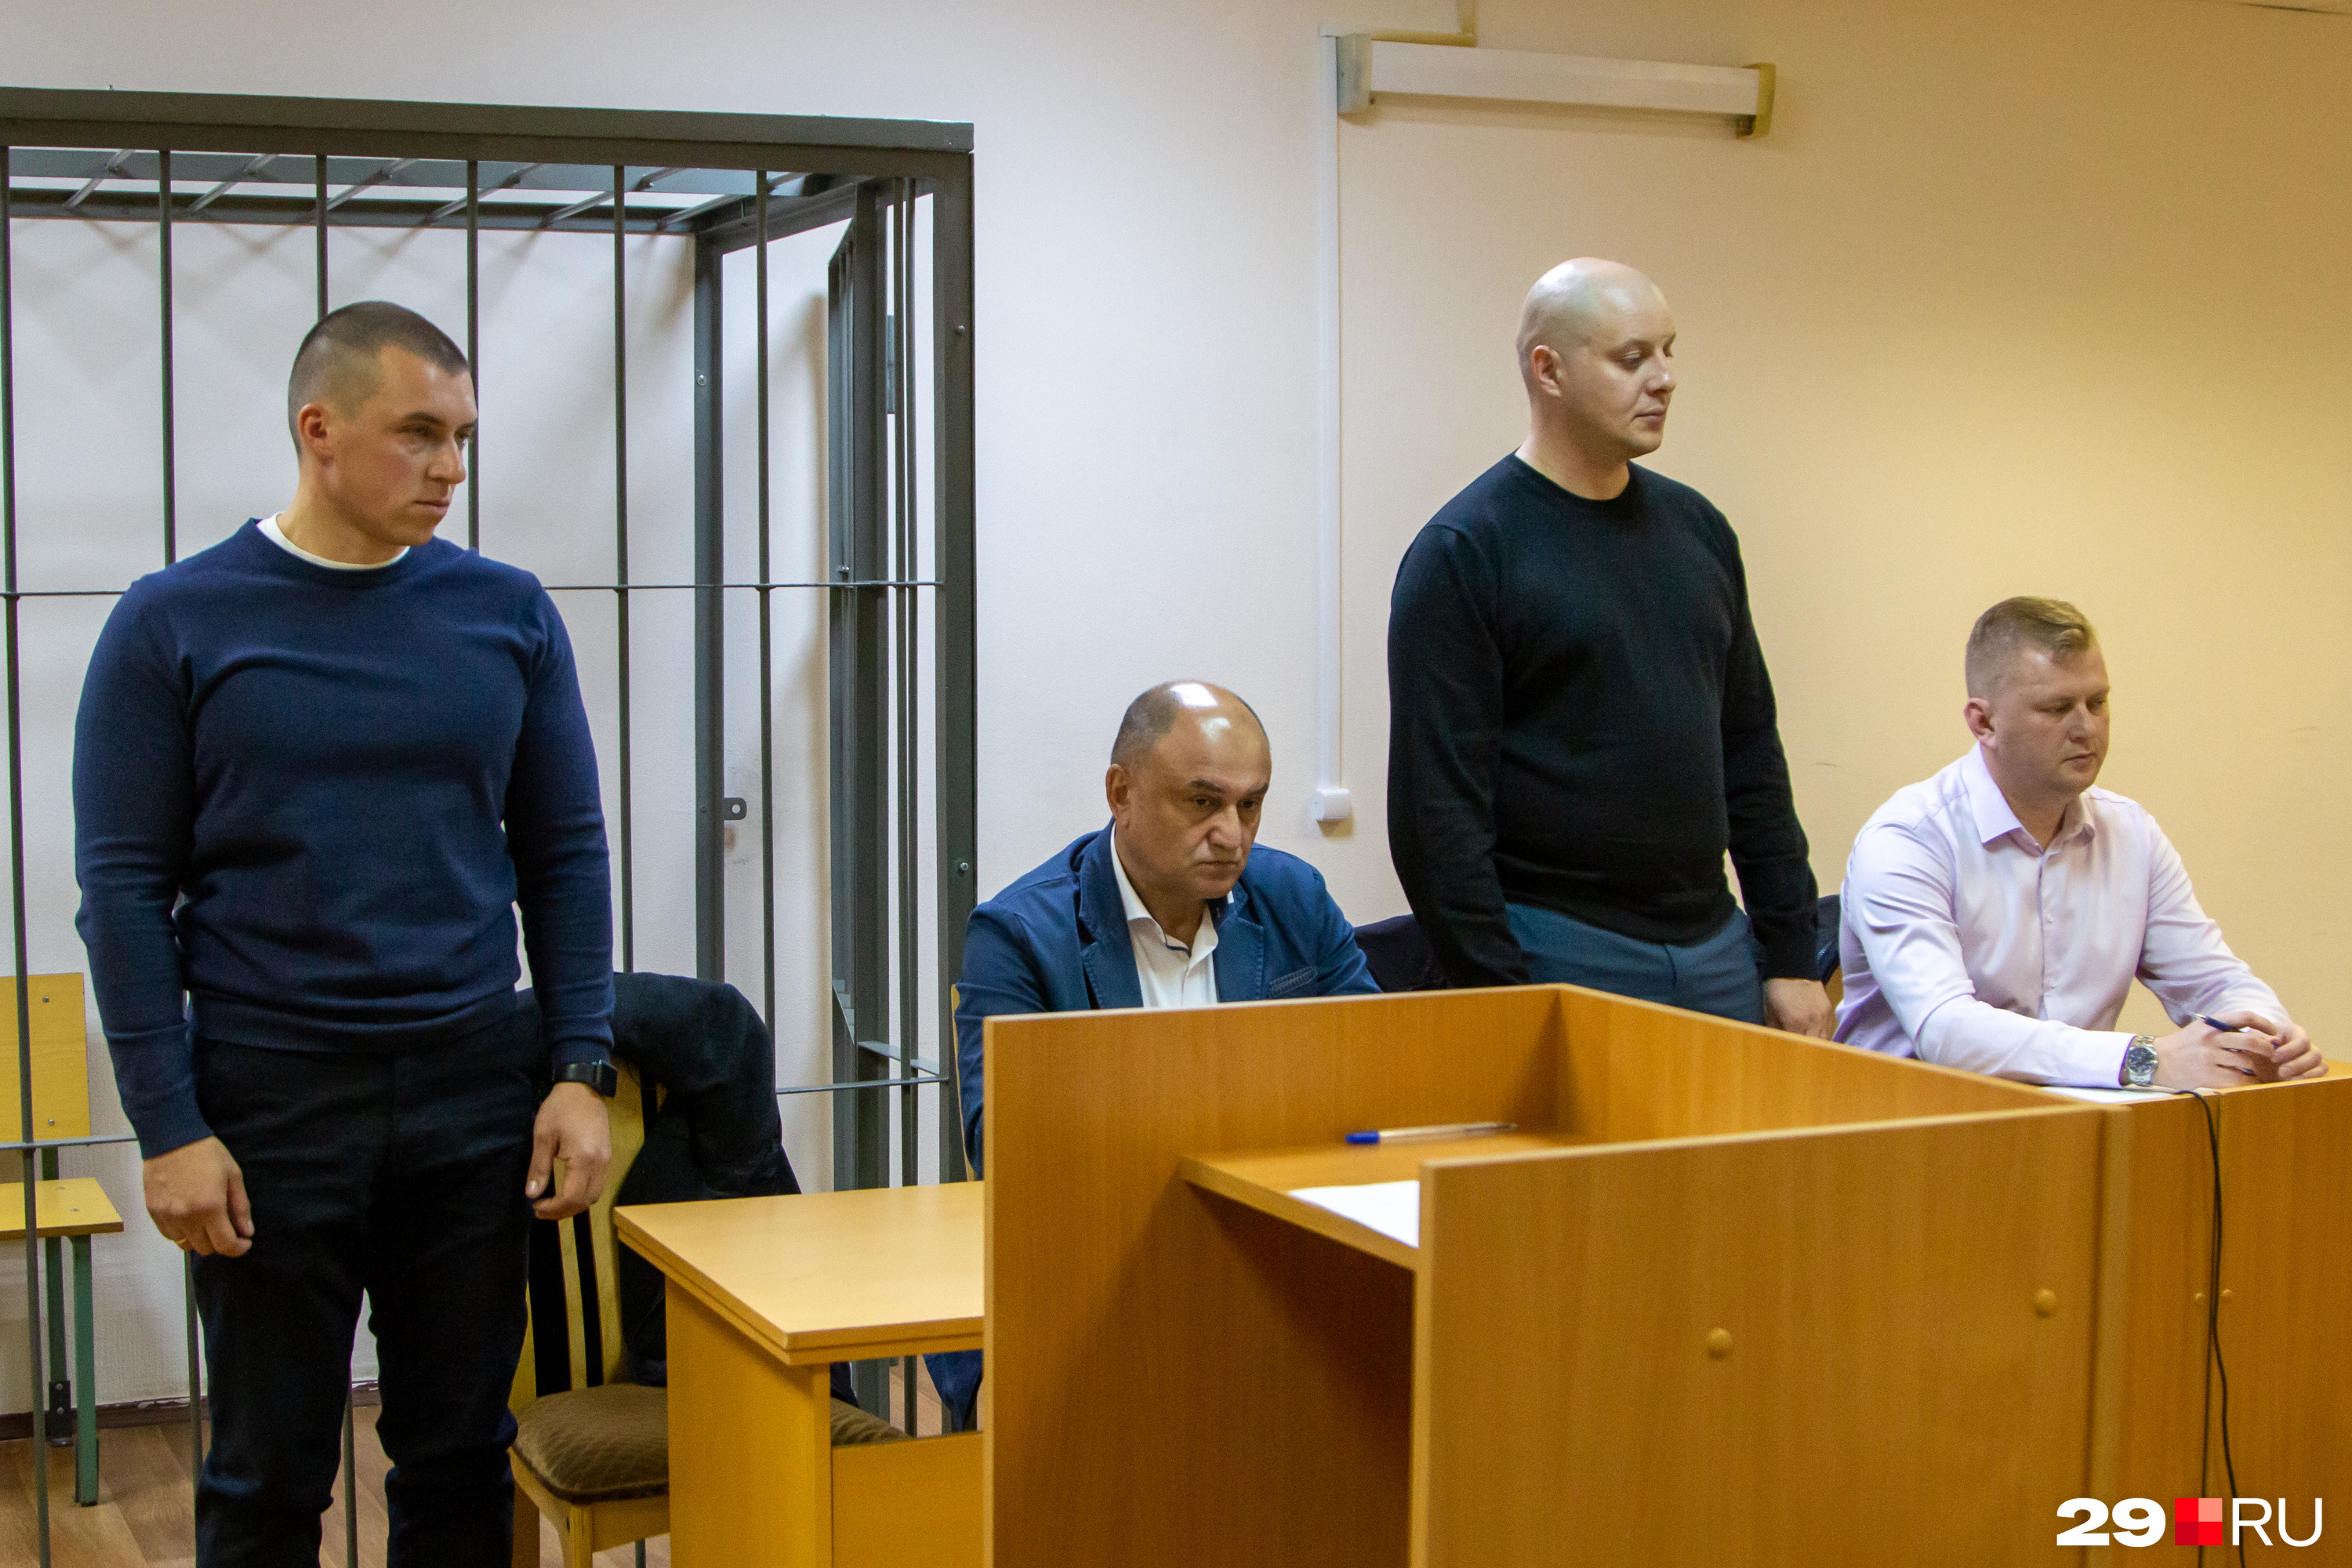 Гришин и Овсянников сказали, что выскажут отношение к предъявленным обвинениям на следующих заседаниях